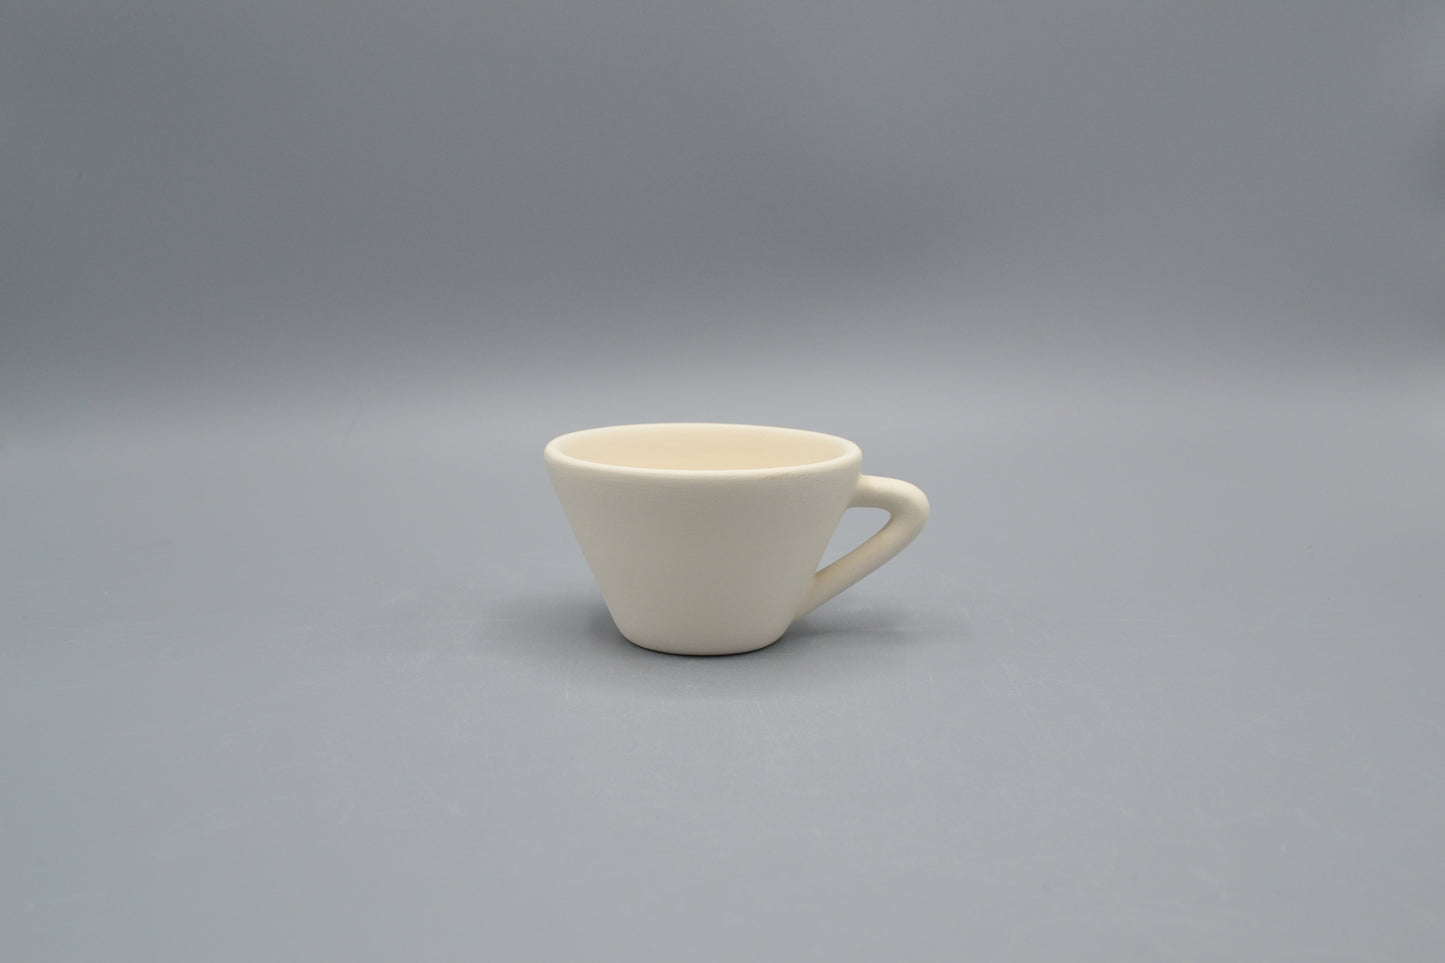 Tazza caffè Iris in ceramica semilavorata GREZZA da dipingere